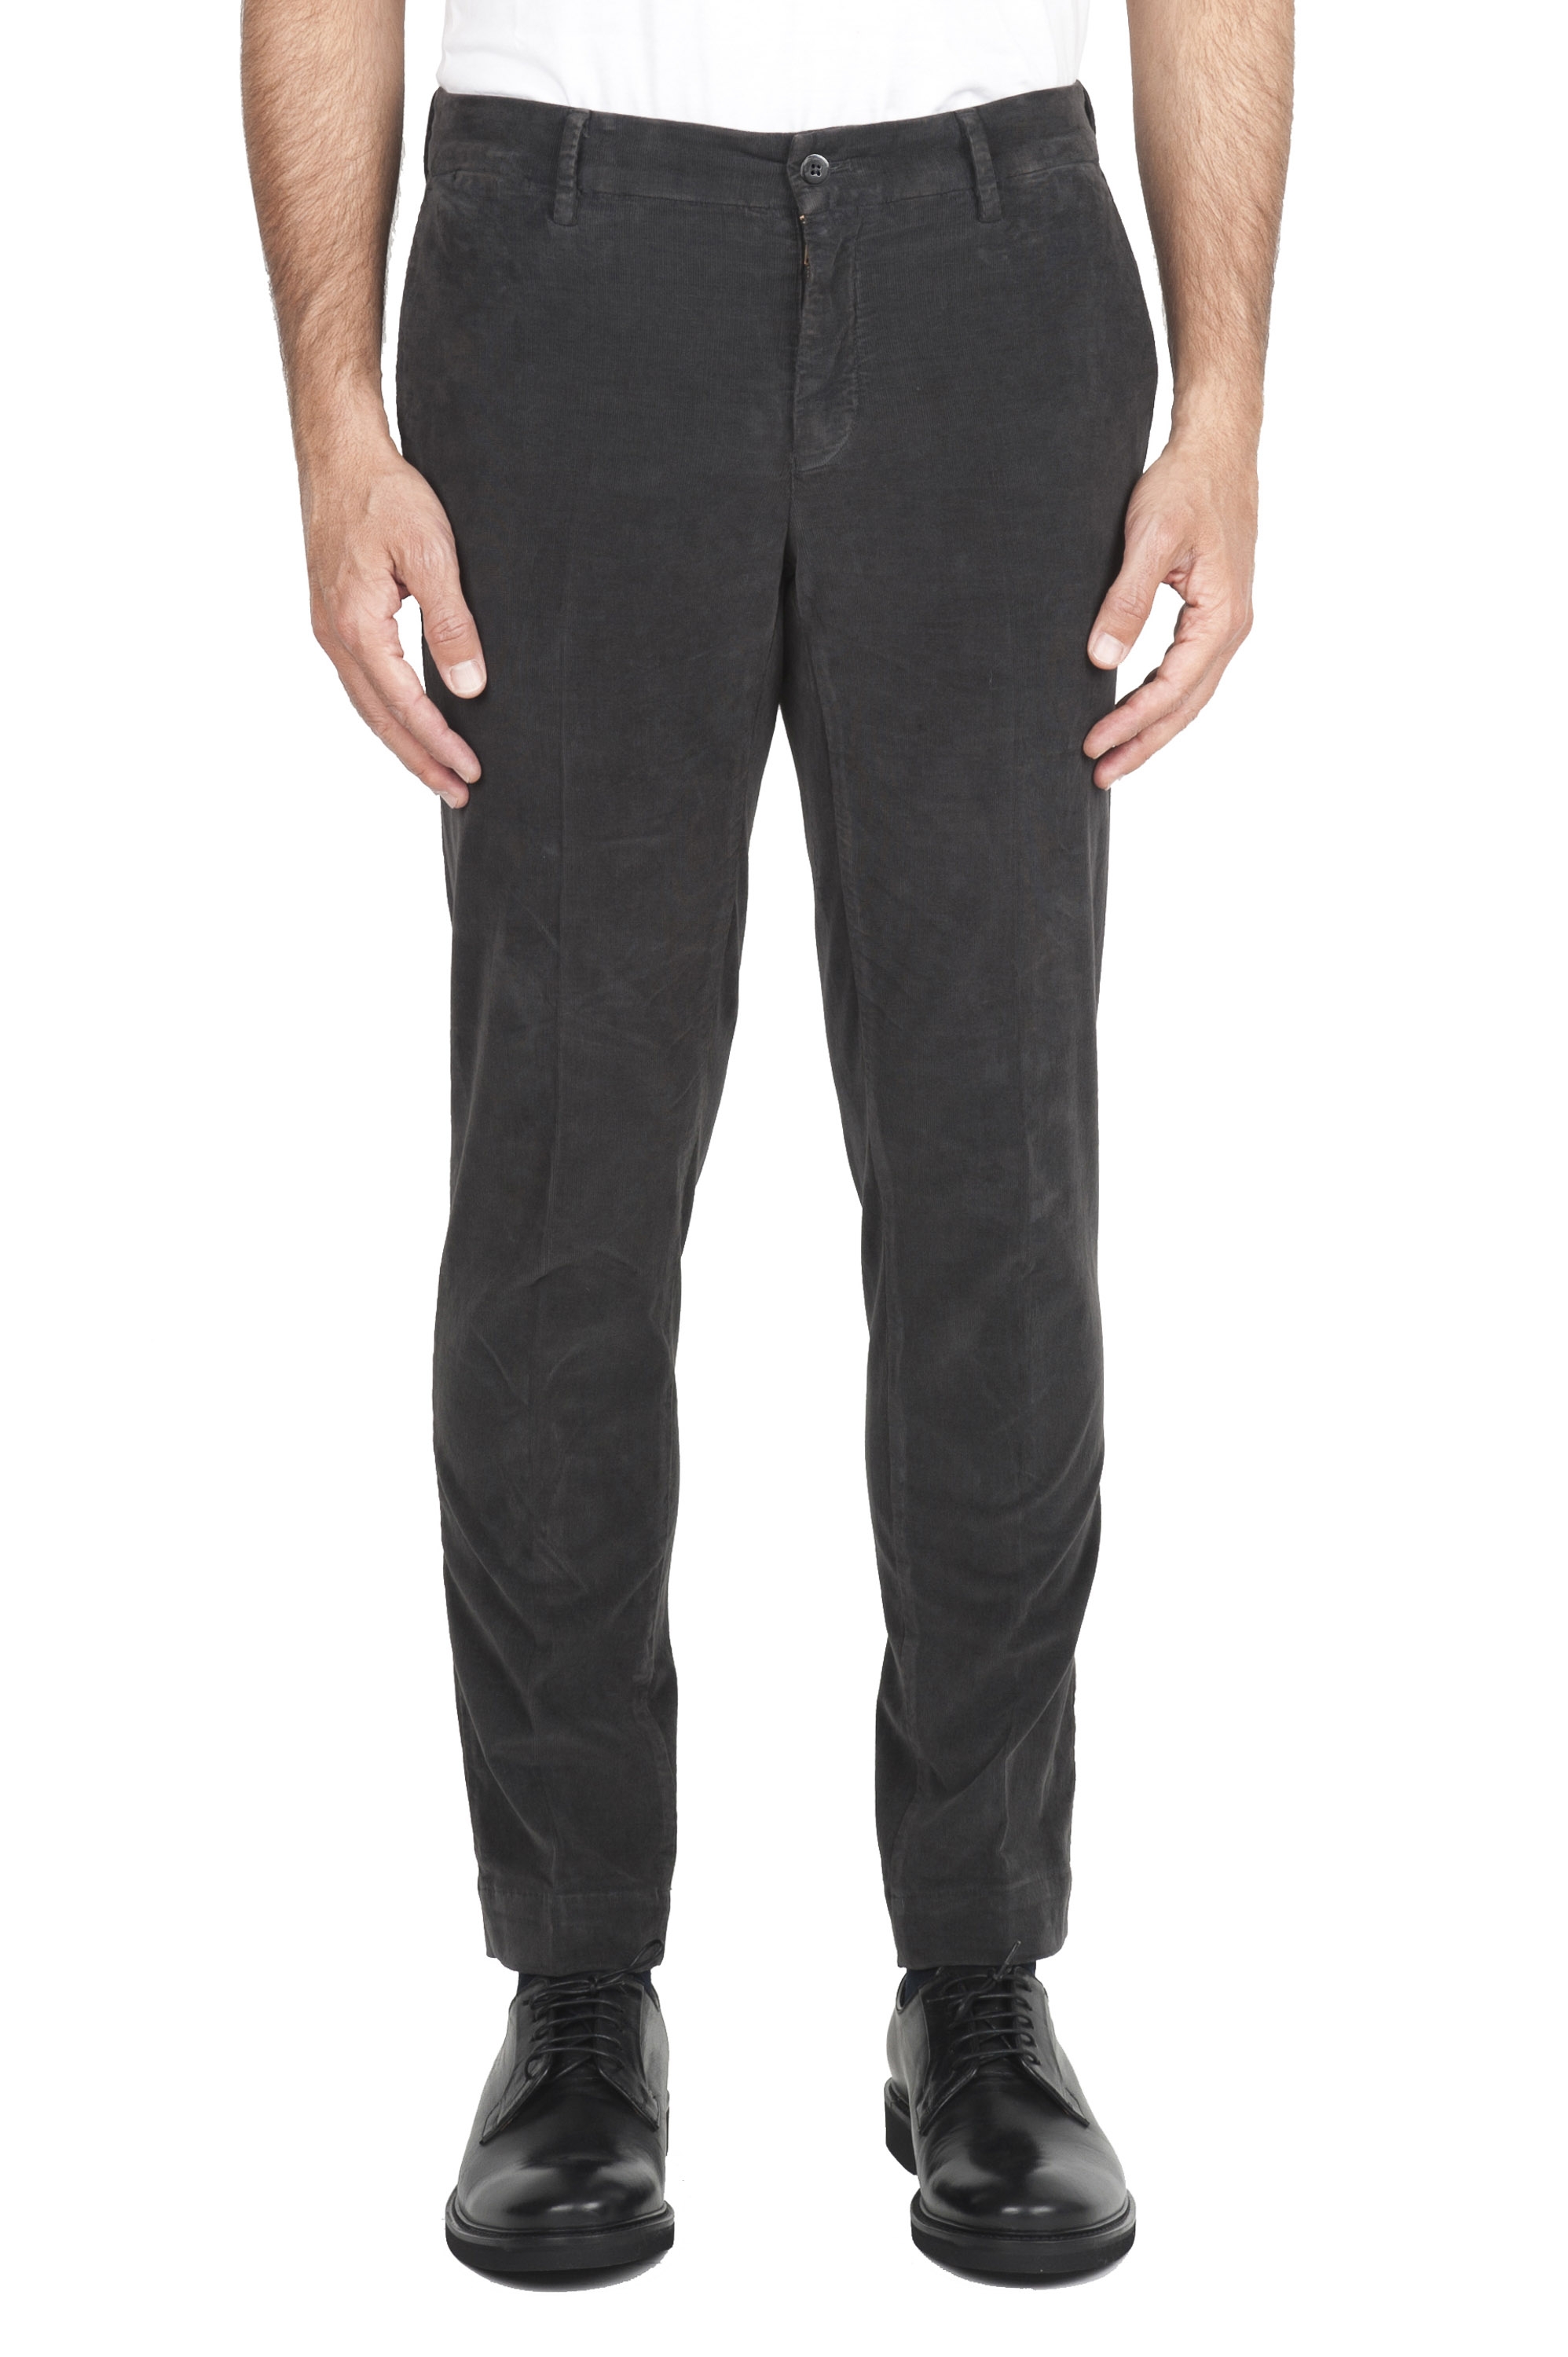 SBU 04613_23AW Pantalones chinos clásicos en algodón elástico gris 01